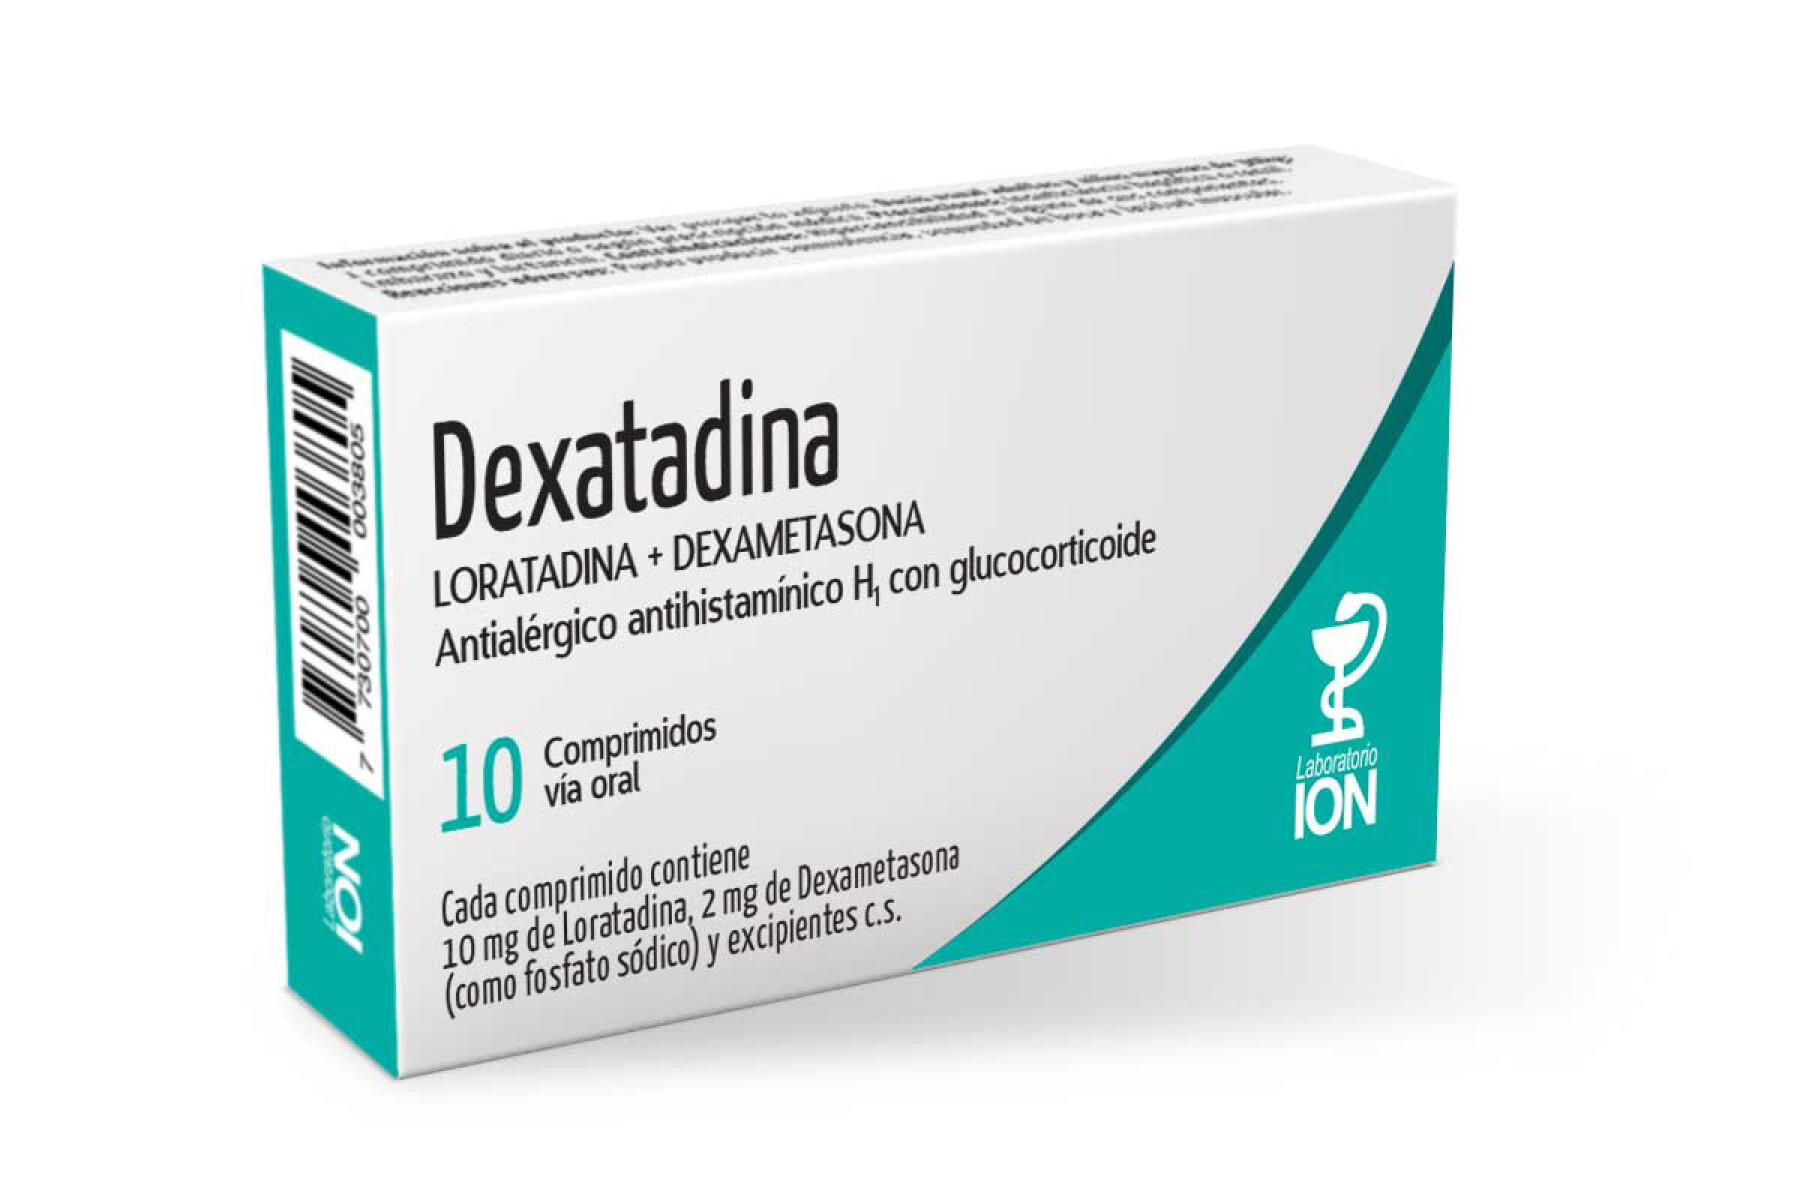 Dexatadina 